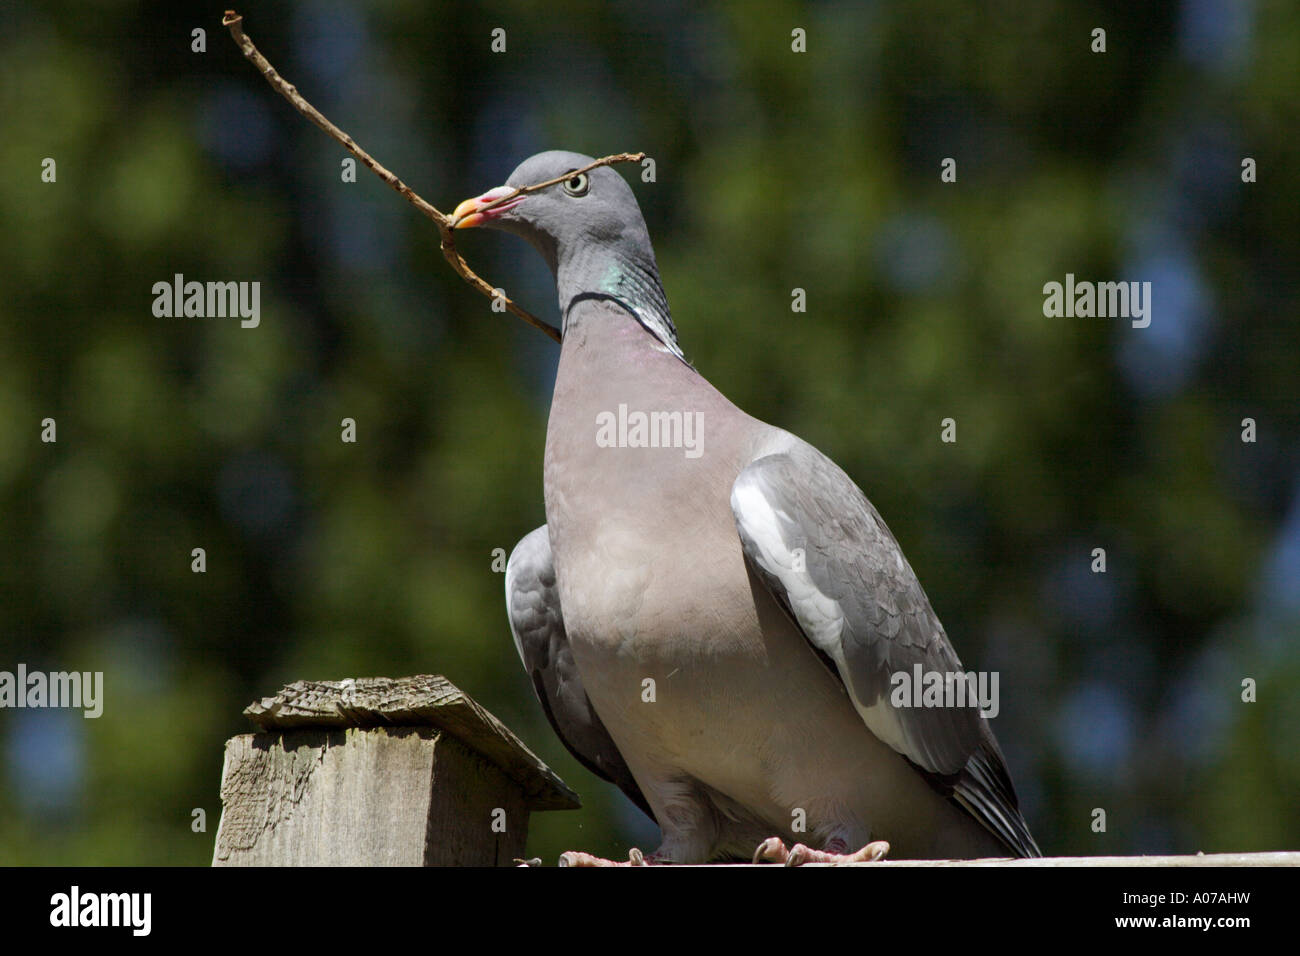 Wood Pigeon, Columba palumbus, carrying stick Stock Photo